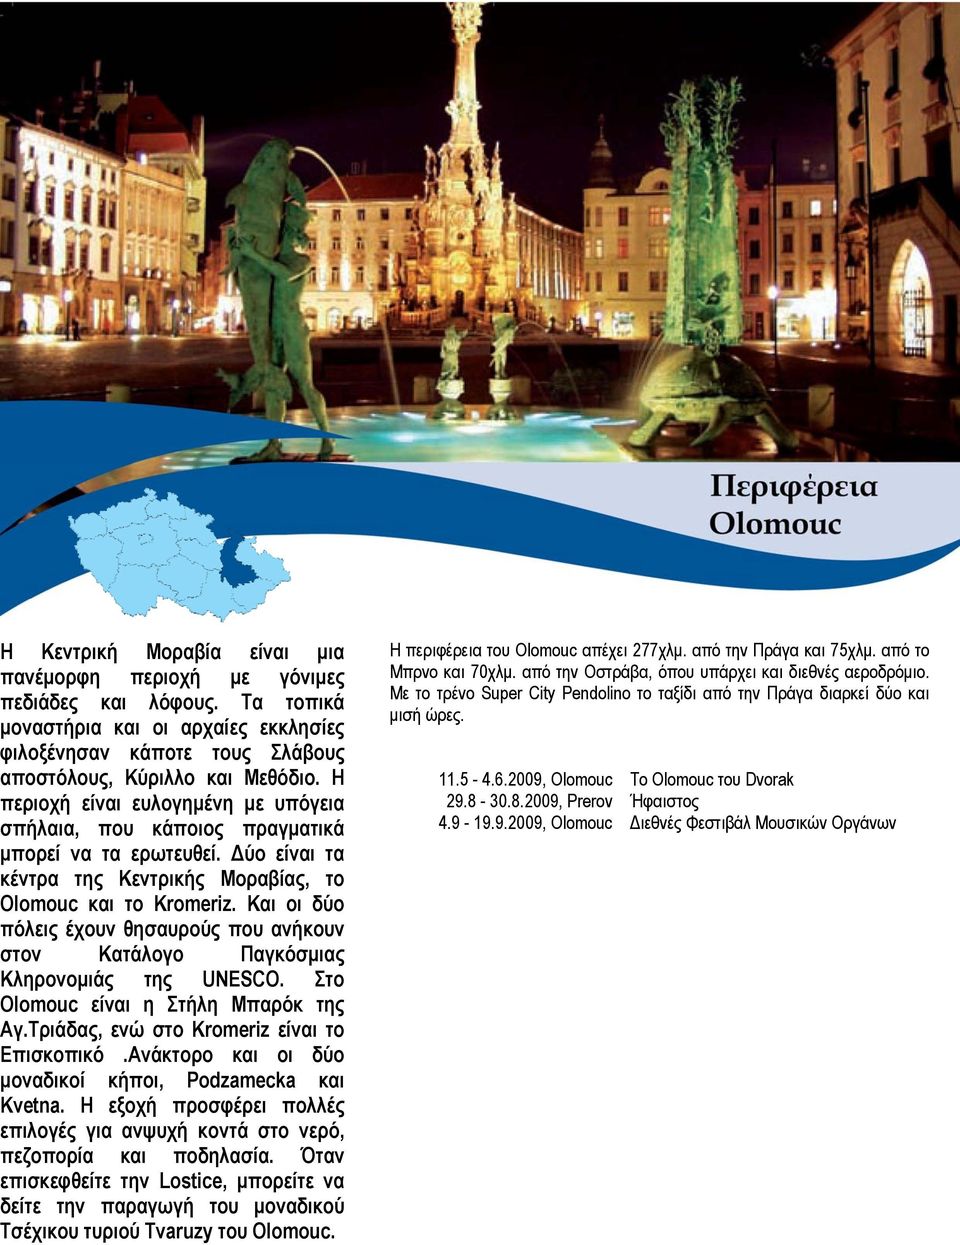 Και οι δύο πόλεις έχουν θησαυρούς που ανήκουν στον Κατάλογο Παγκόσμιας Κληρονομιάς της UNESCO. Στο Olomouc είναι η Στήλη Μπαρόκ της Αγ.Τριάδας, ενώ στο Kromeriz είναι το Επισκοπικό.